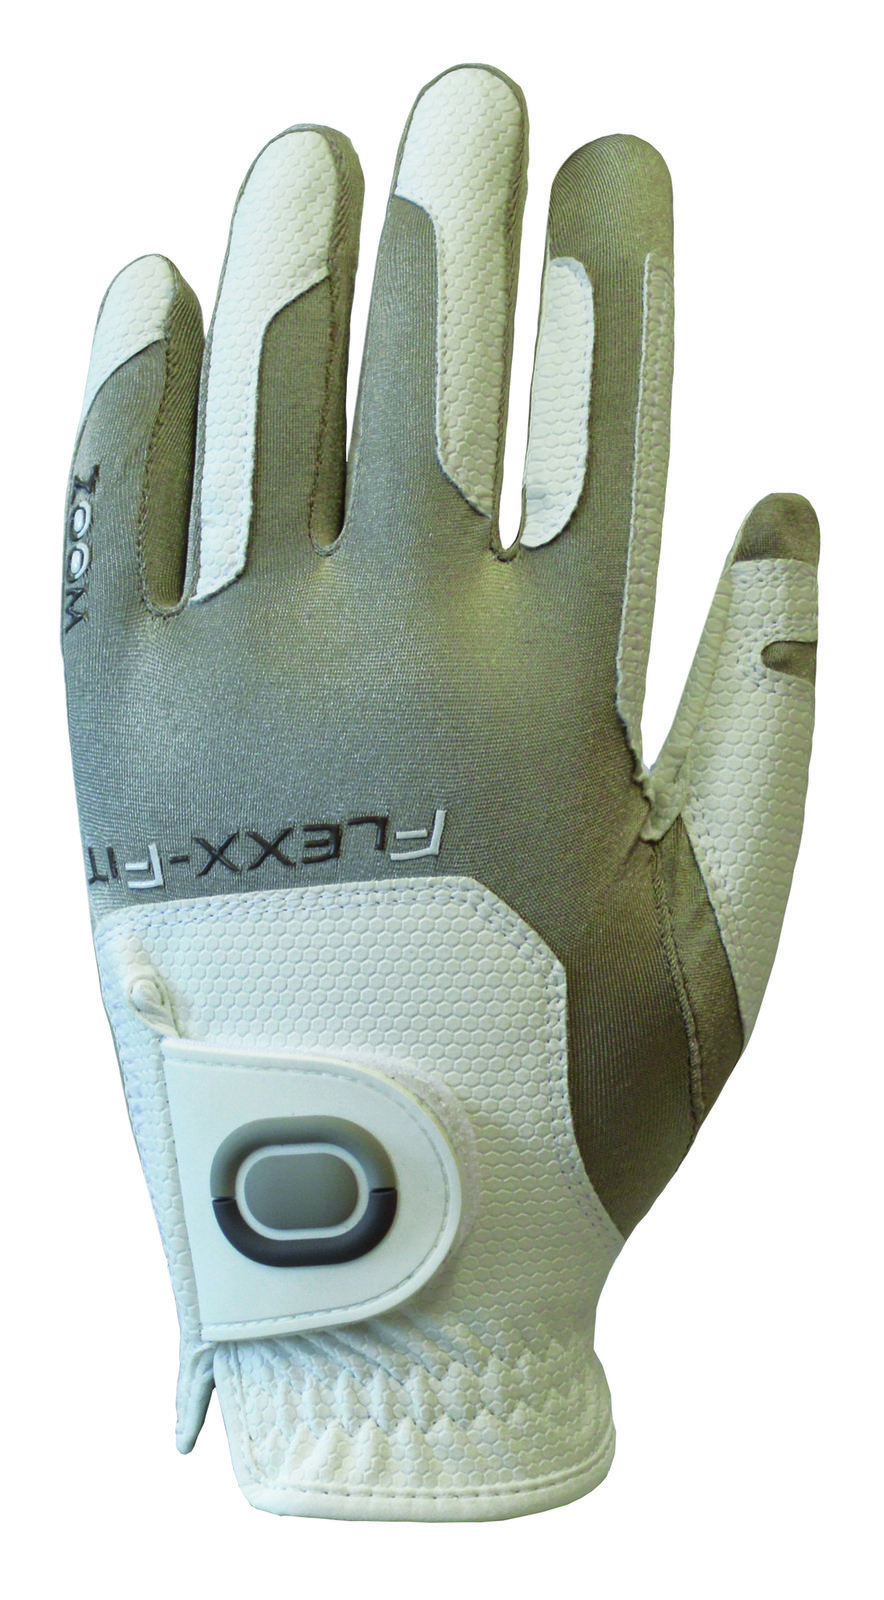 Handschuhe Zoom Gloves Weather Womens Golf Glove White/Sand LH